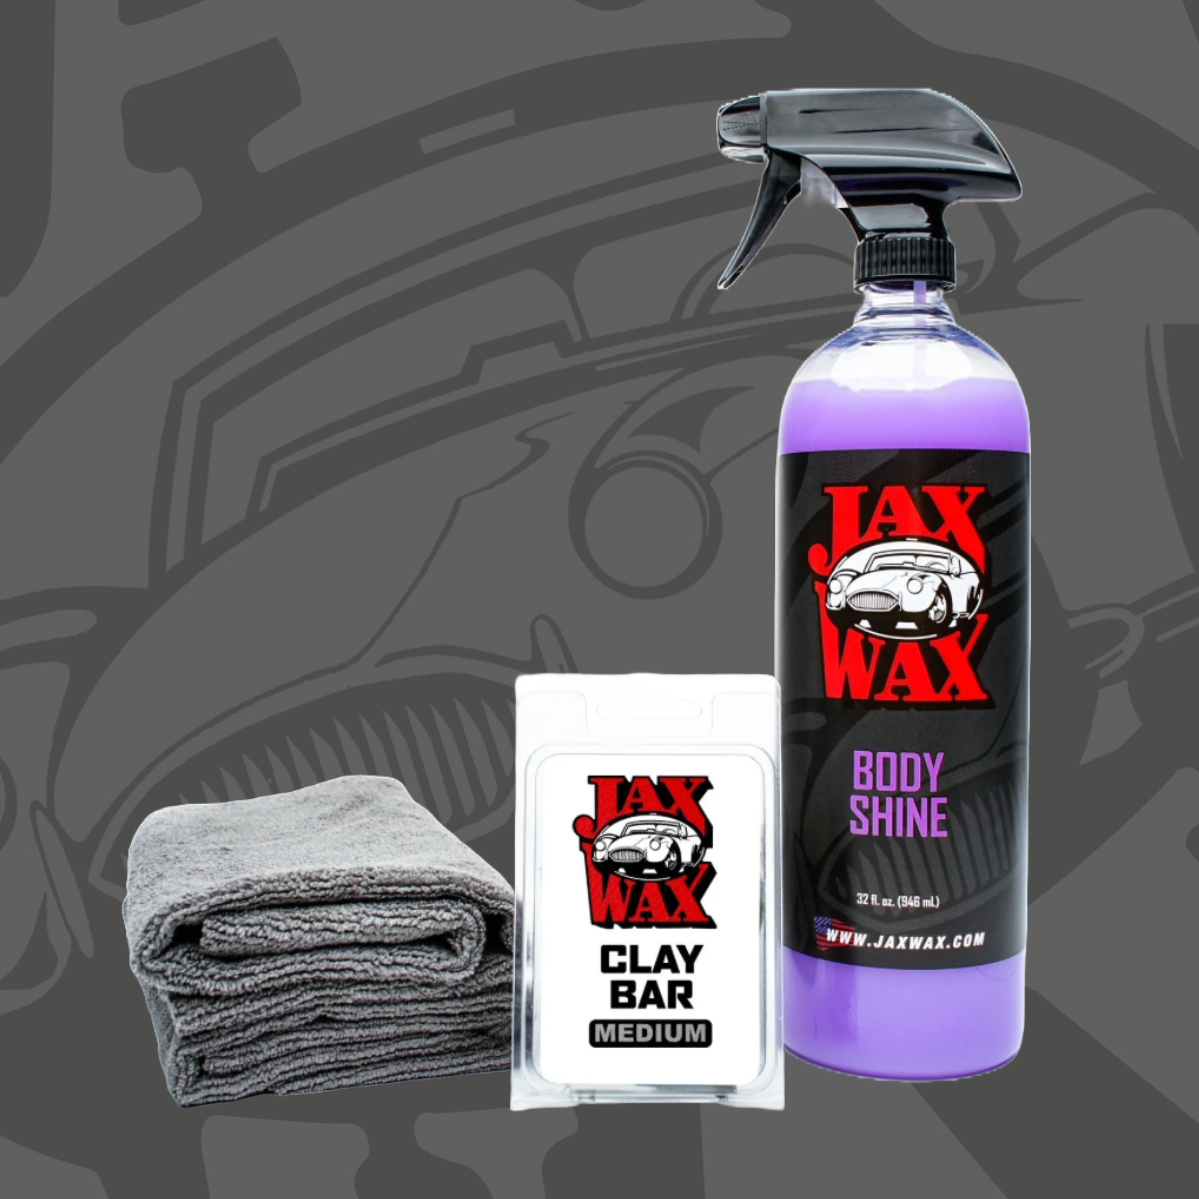 *Jax Wax Professional Grade Clay Bar Kit